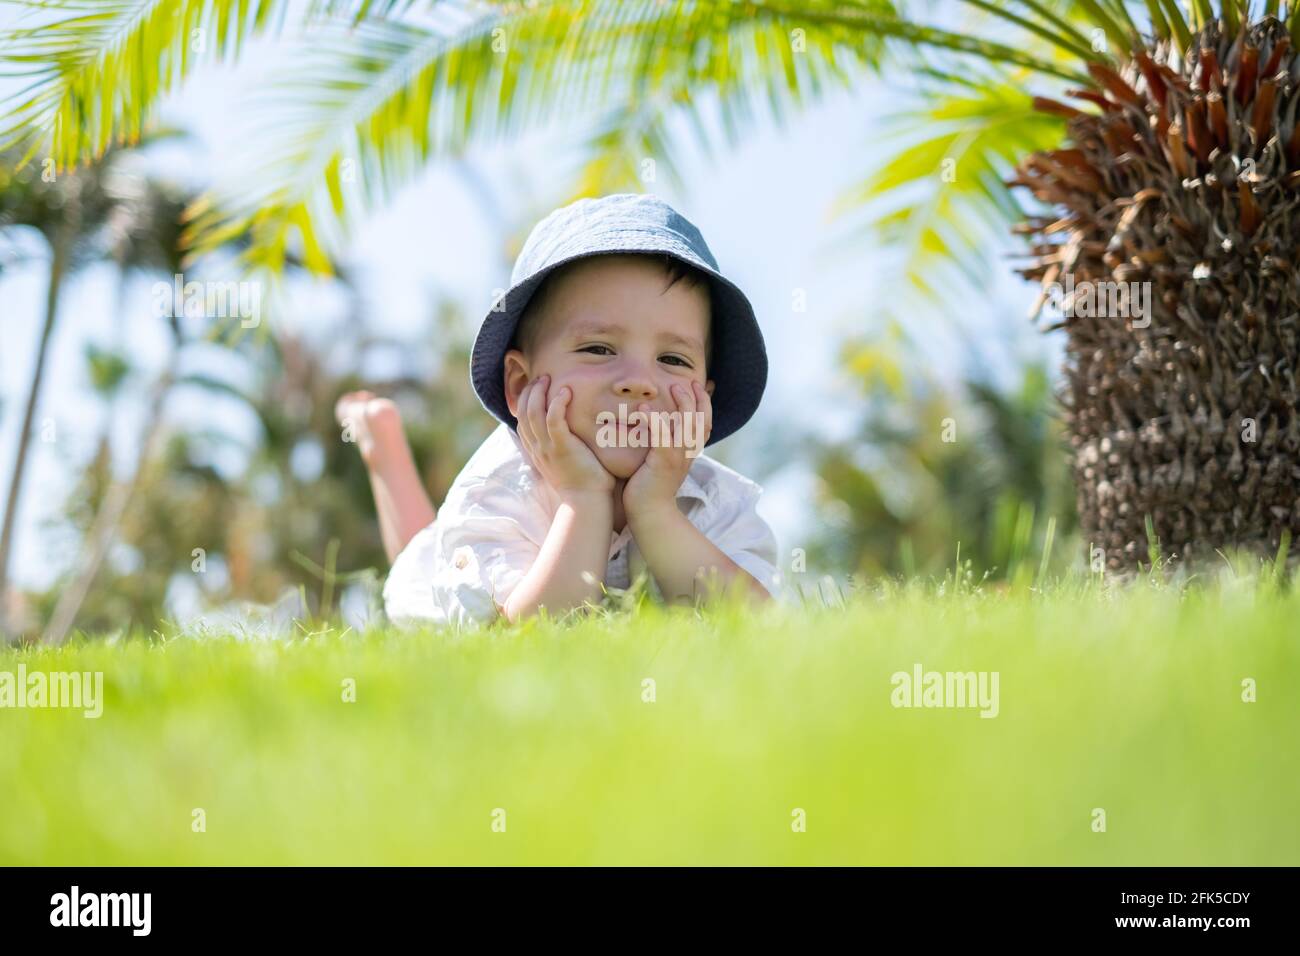 Un petit garçon heureux, allongé sur de l'herbe verte sous les palmiers Banque D'Images